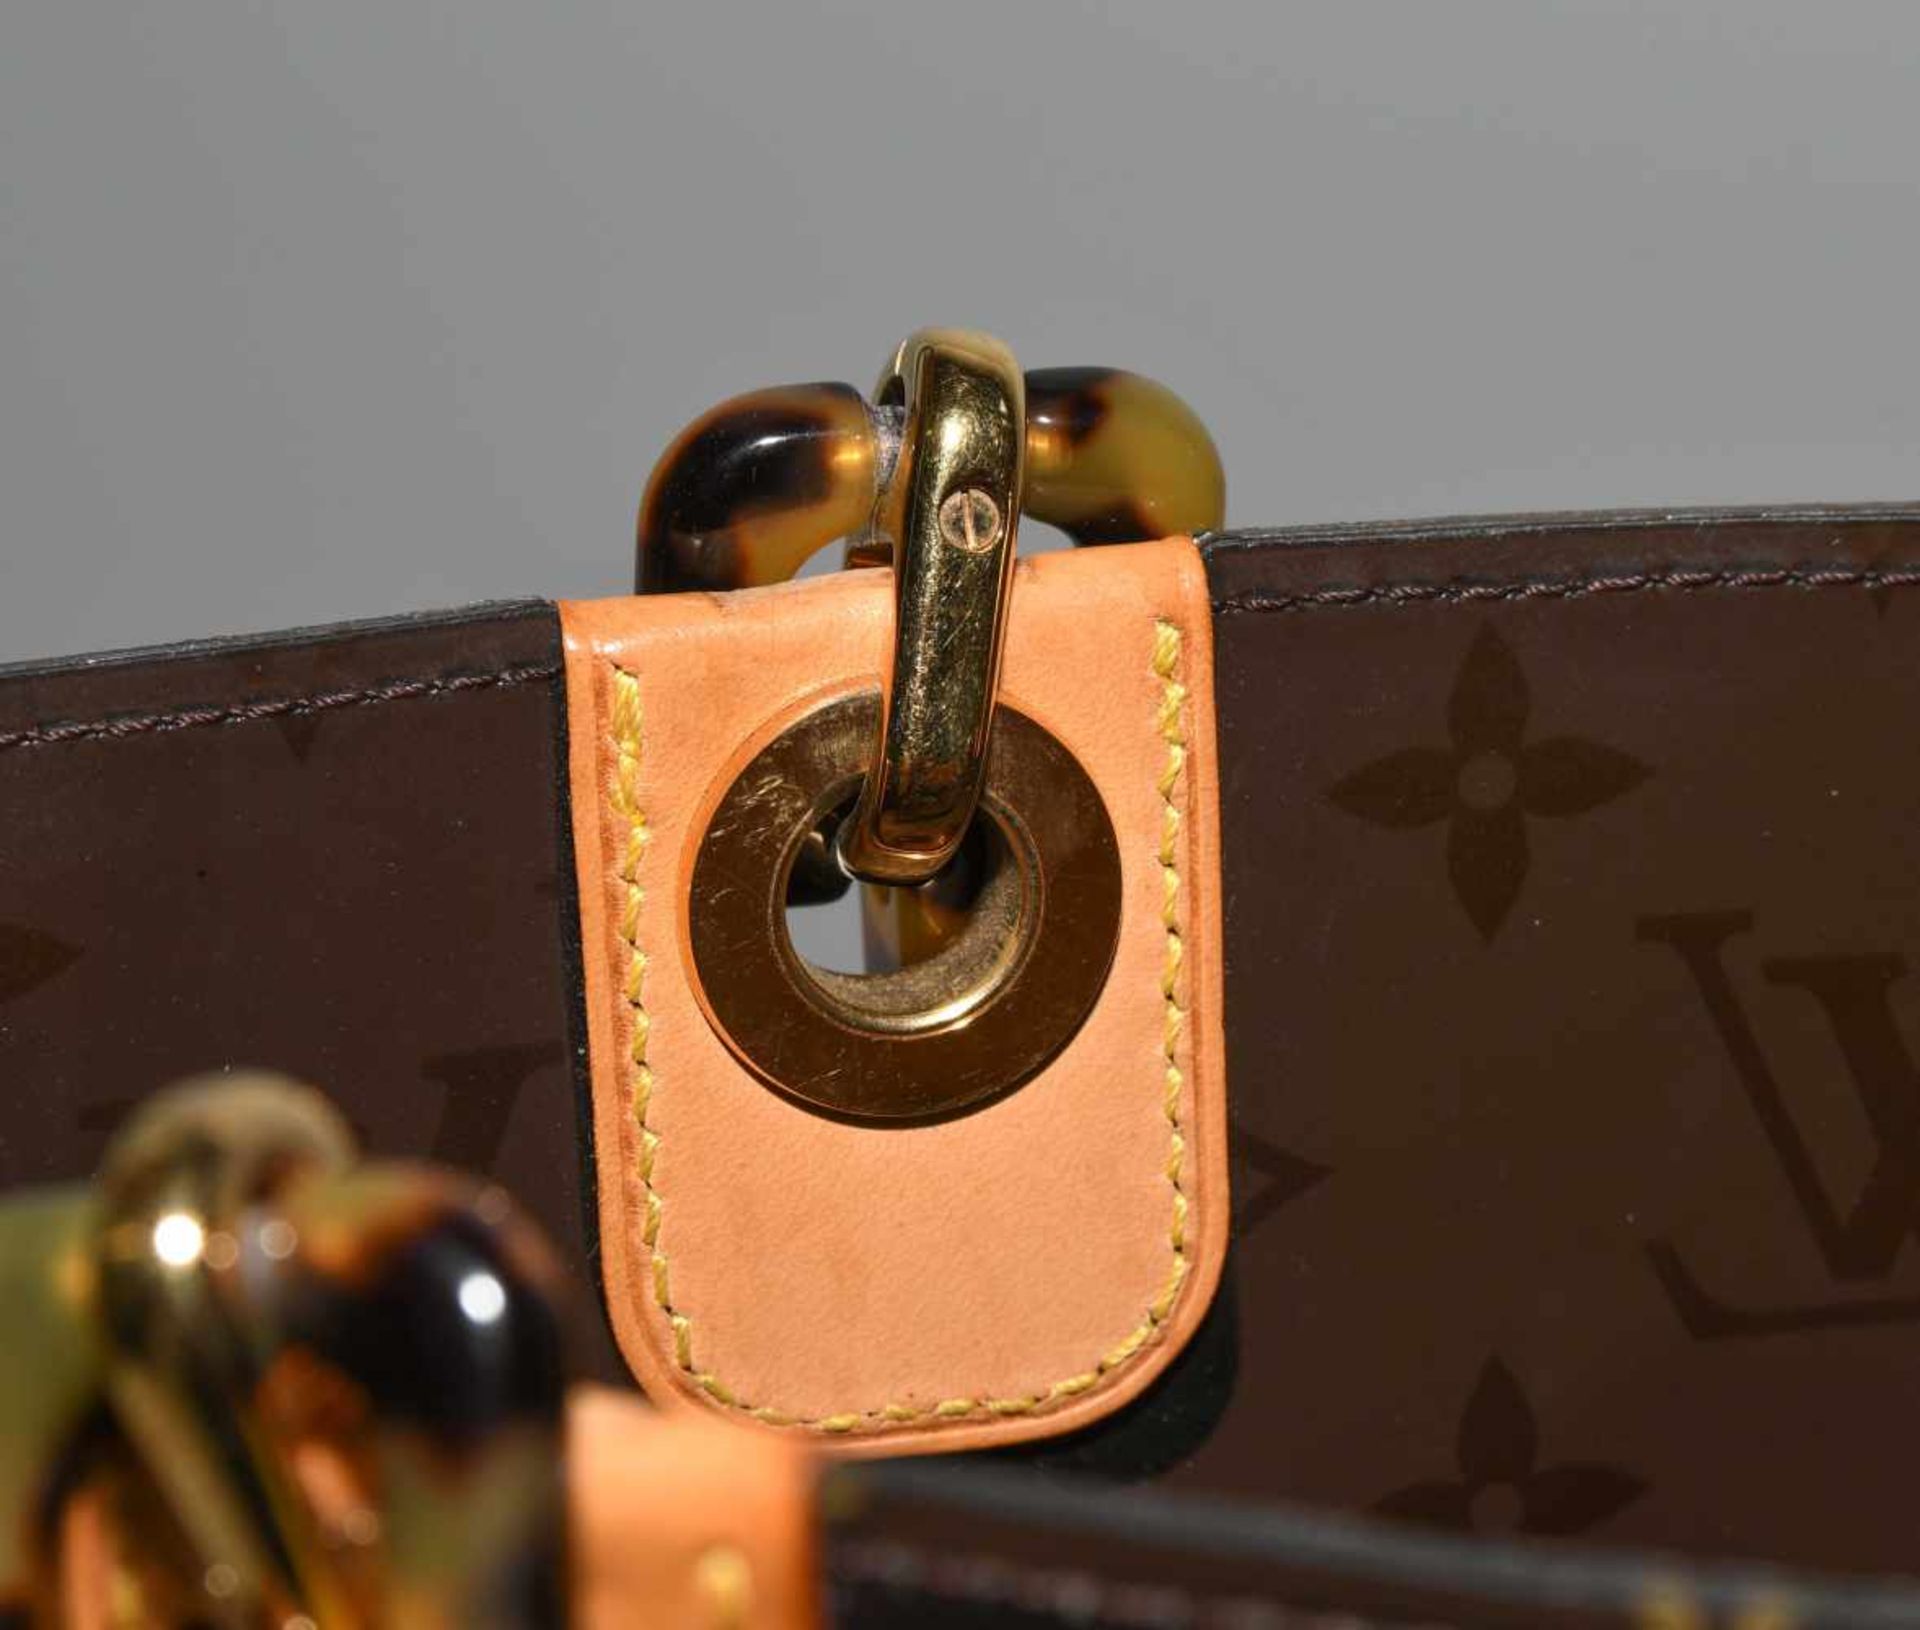 Louis Vuitton, "Ambre sac cabas"Schultertasche aus braunem Vinyl mit klassischem Monogram Muster. - Bild 7 aus 17